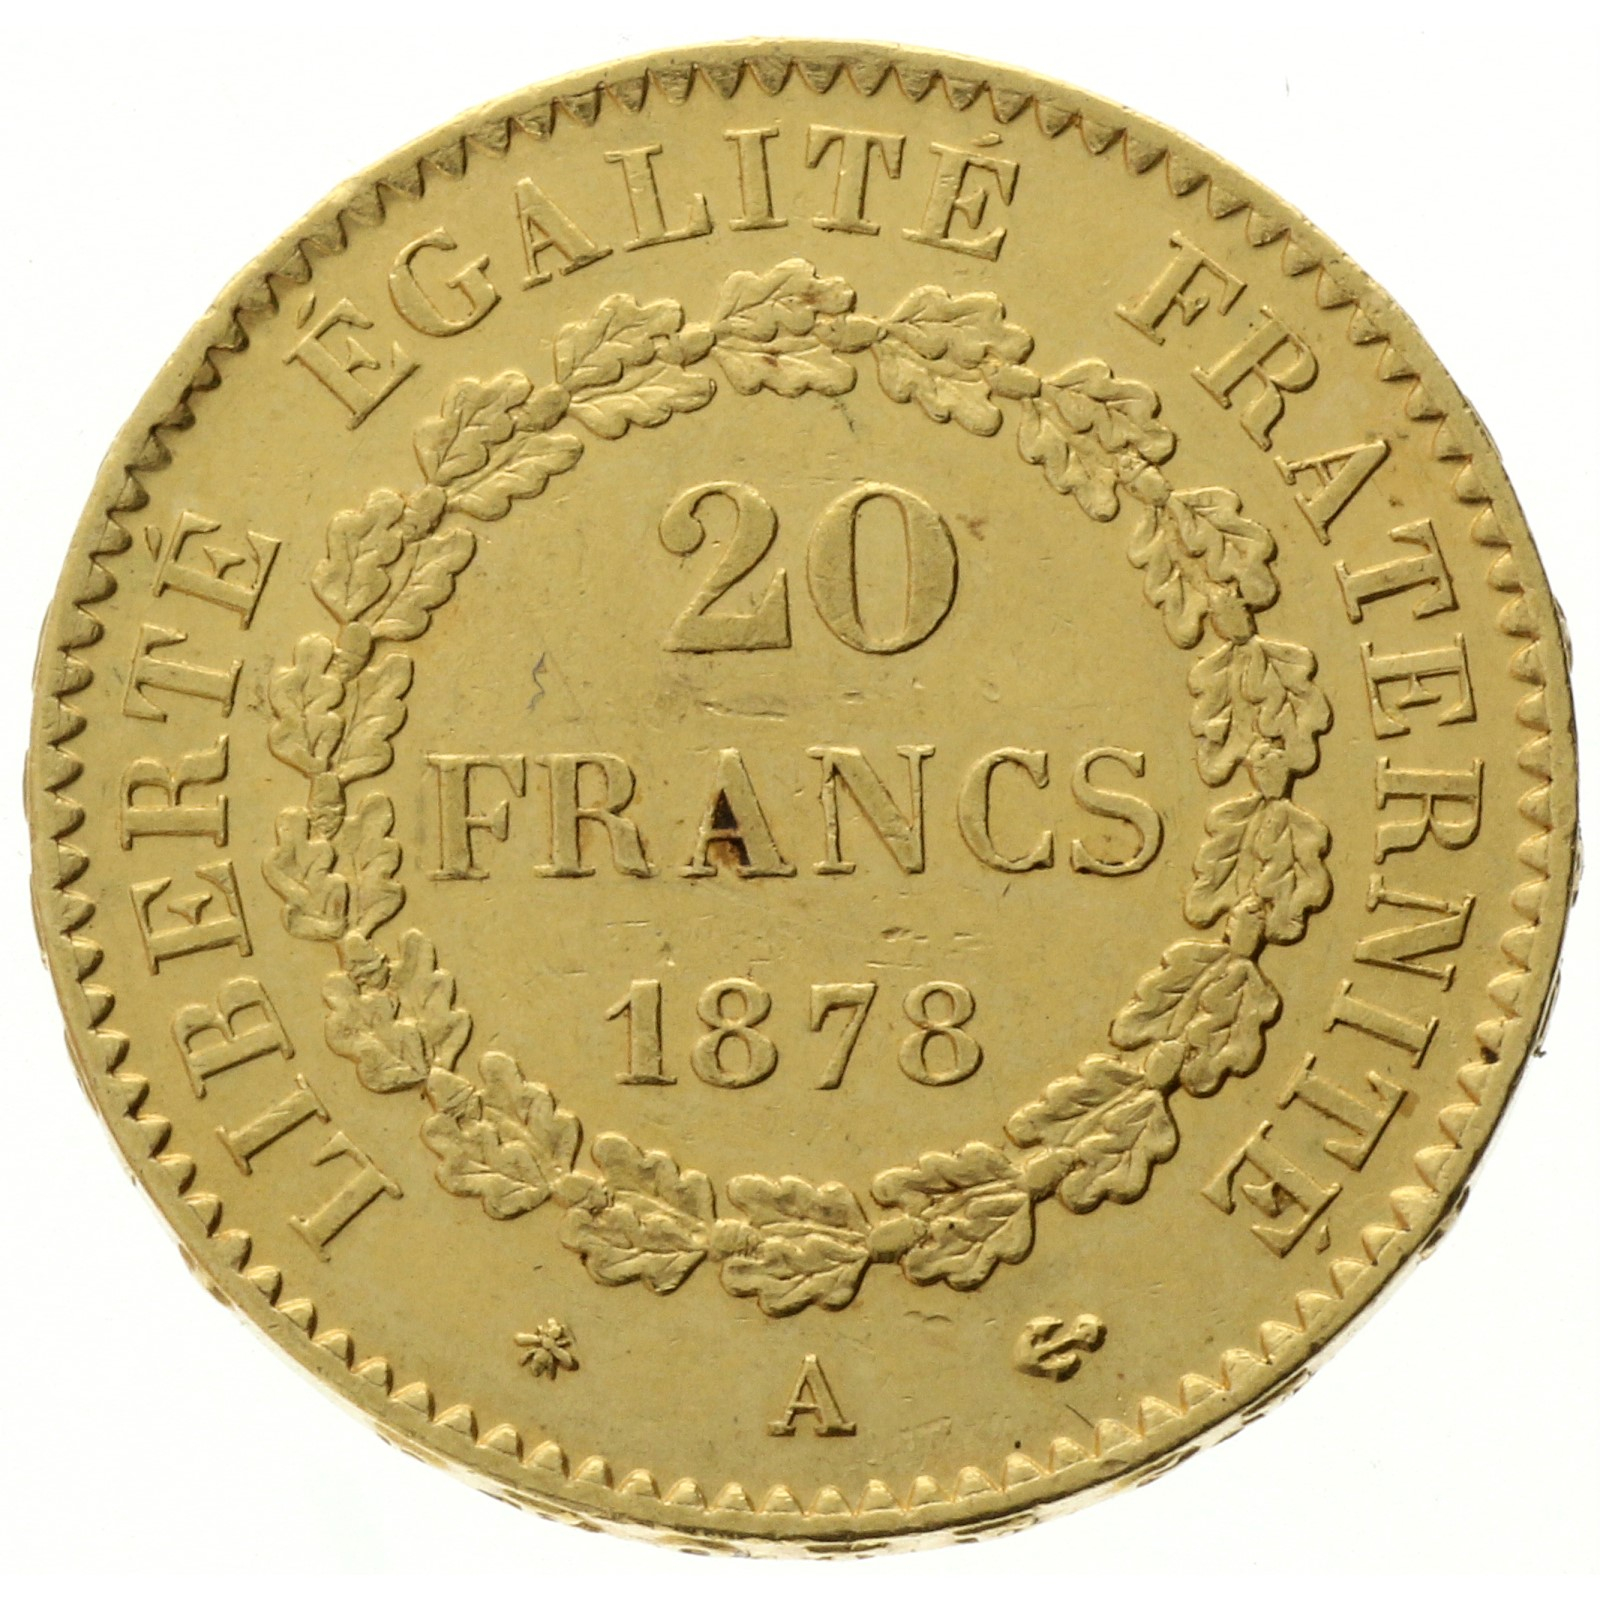 France - 20 francs - 1878 - A